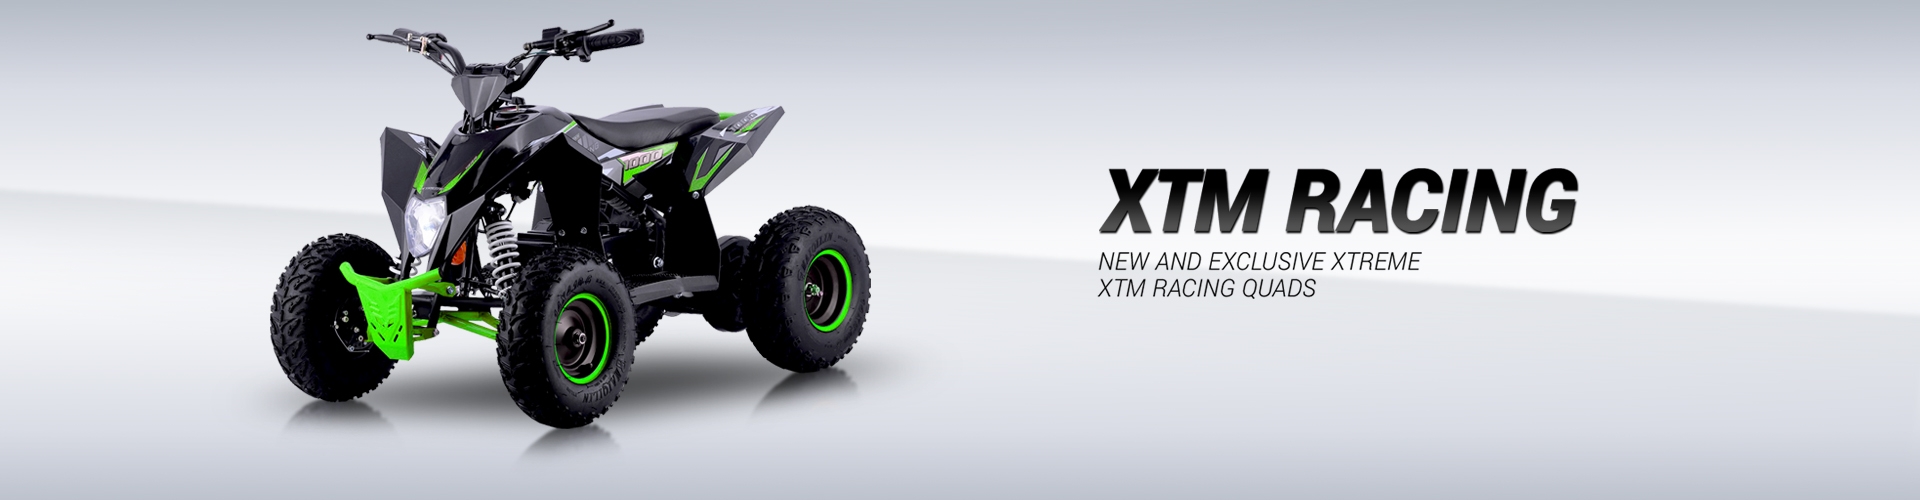 XTM Racing Quad 48V 1300W